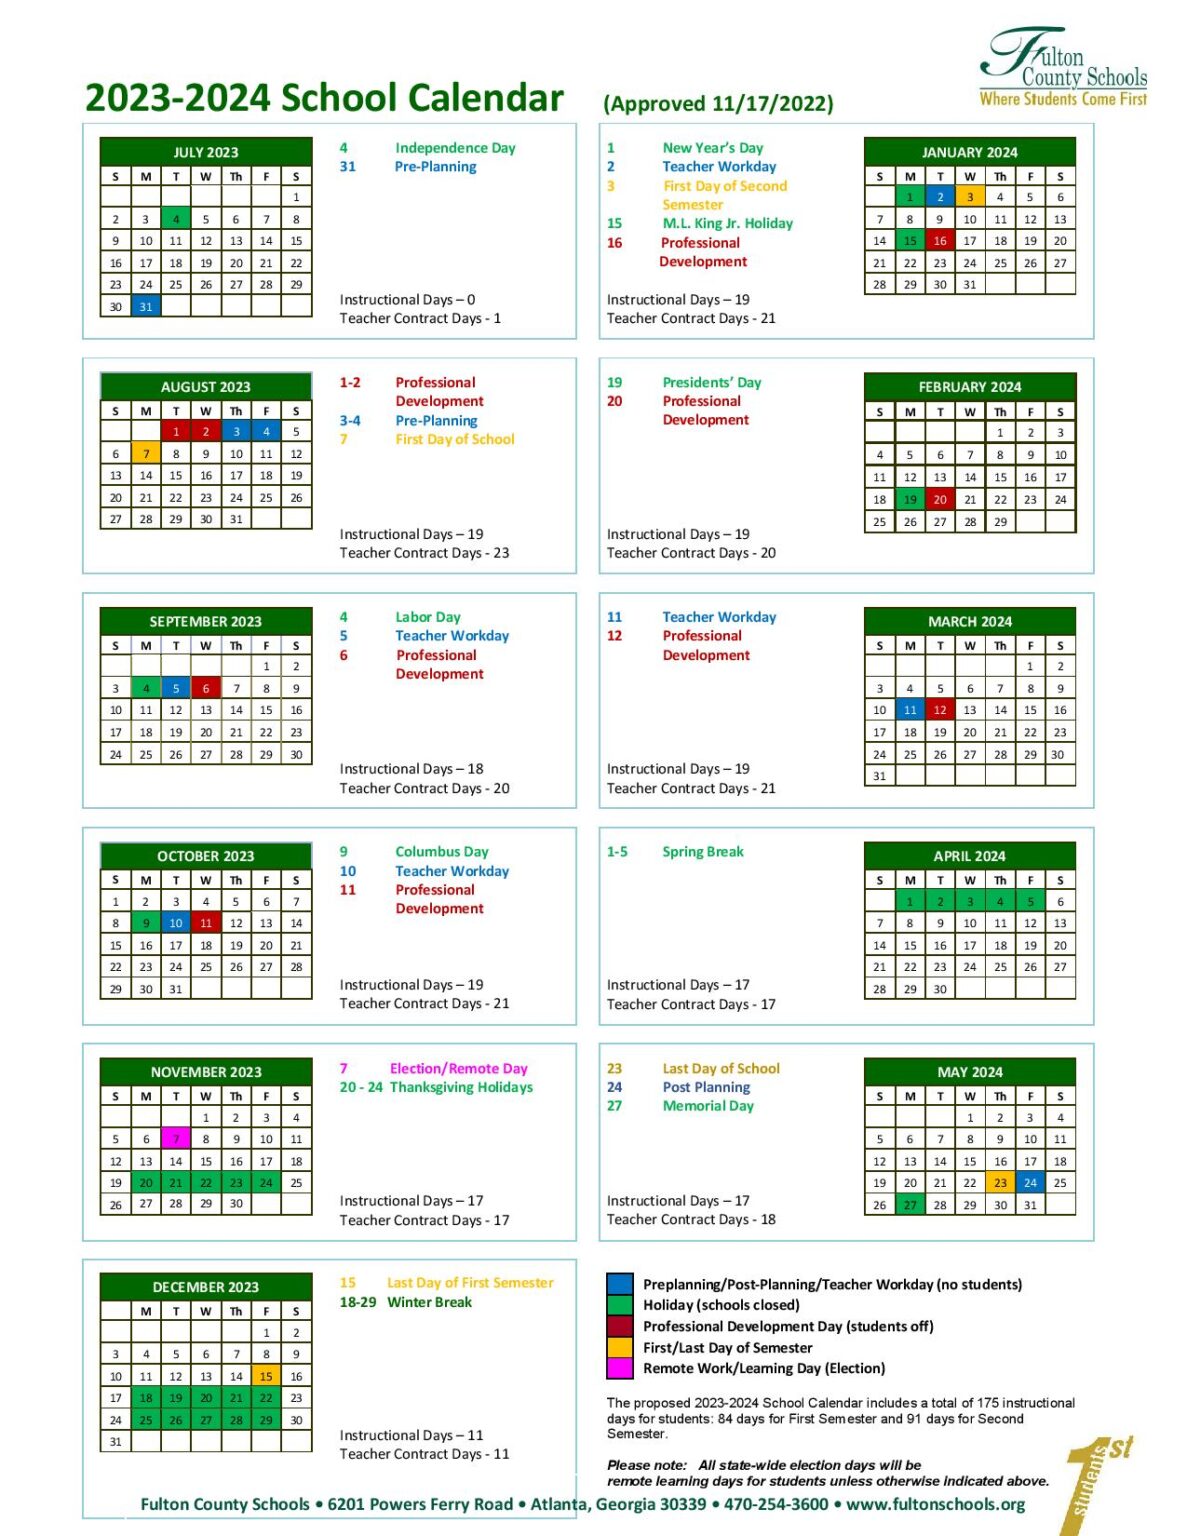 fulton-county-schools-calendar-2023-2024